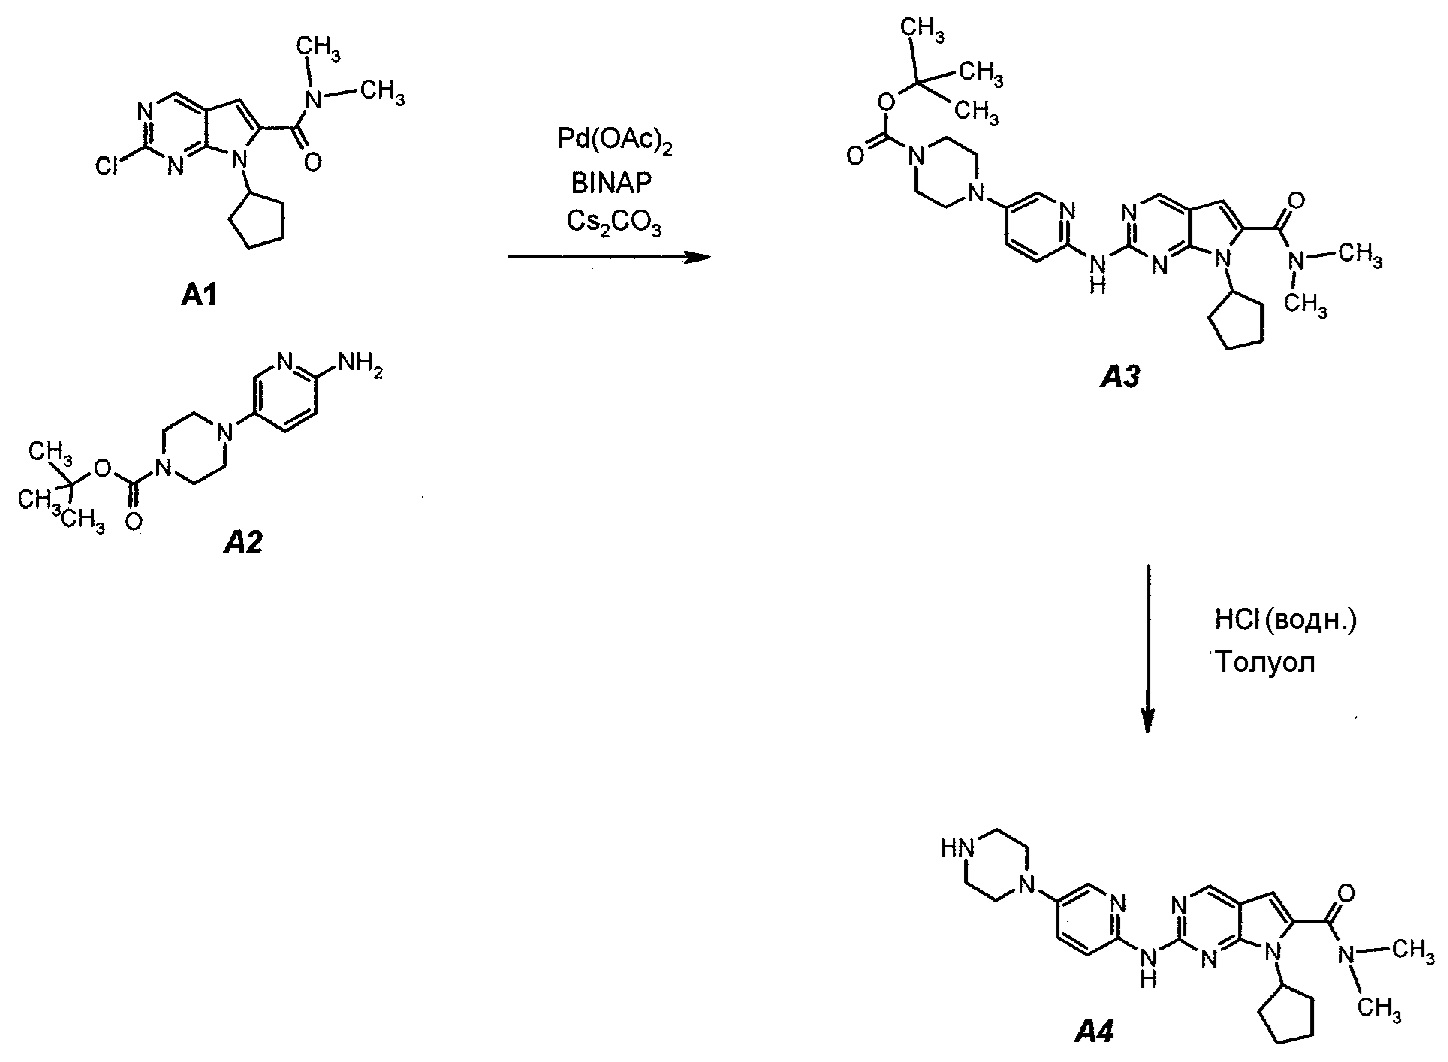 1 трет бутил. Схема синтеза ил 1. Циклопентил(пиридин-2-ил)метанамин. Пиролиз карбоксилатов аммония. Диметиламид пропионовой кислоты.